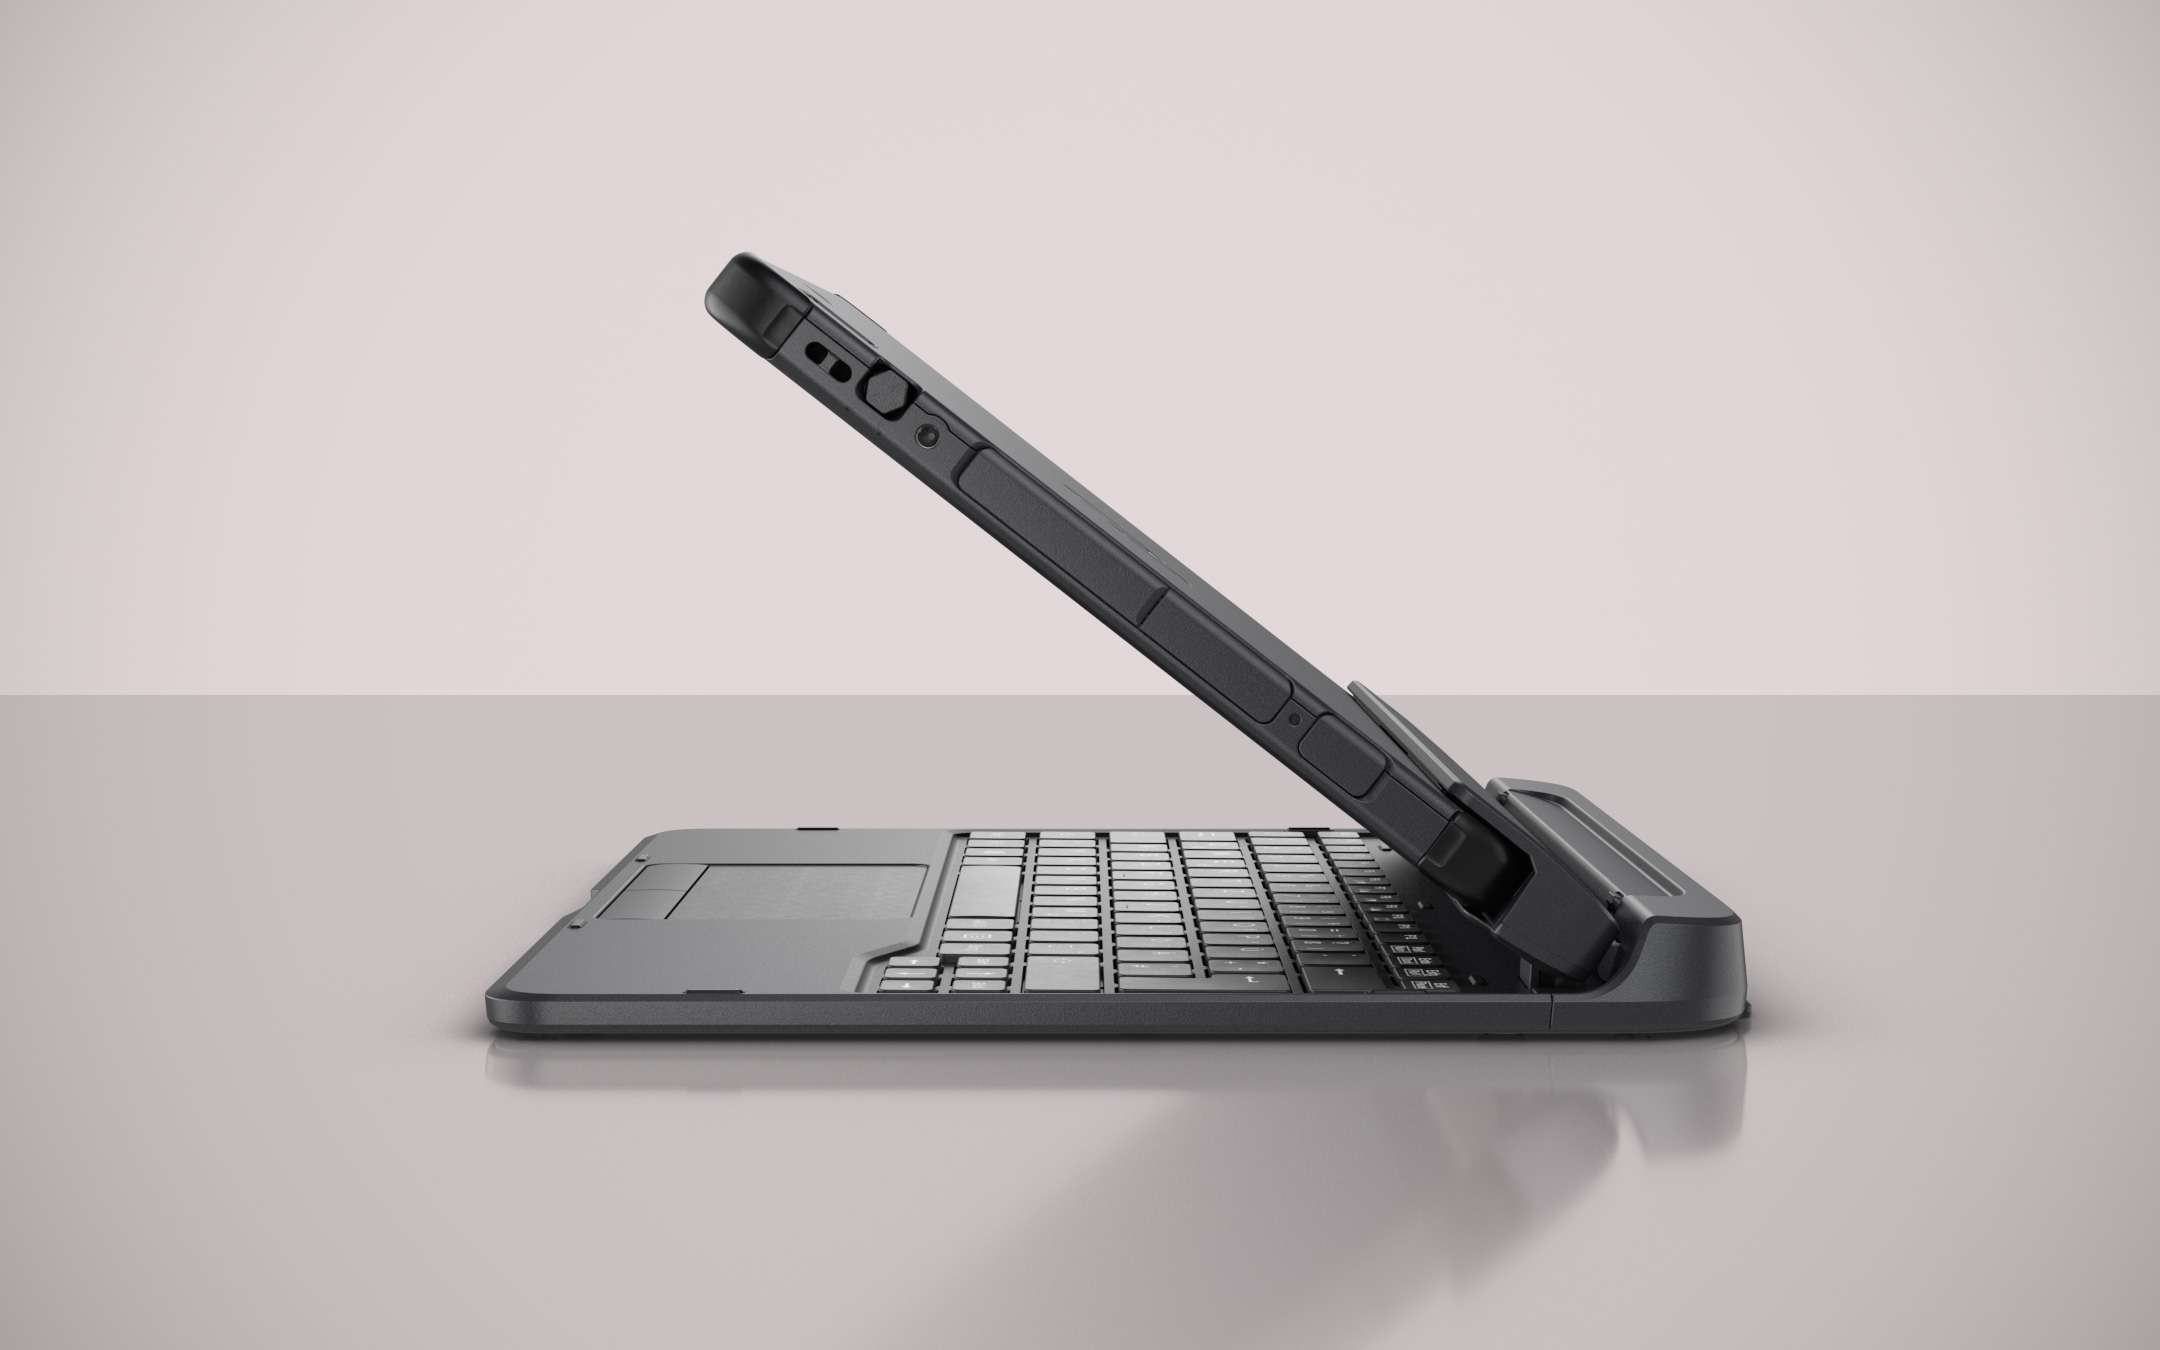 Fujitsu Stylistic Q5010, rugged tablet for work